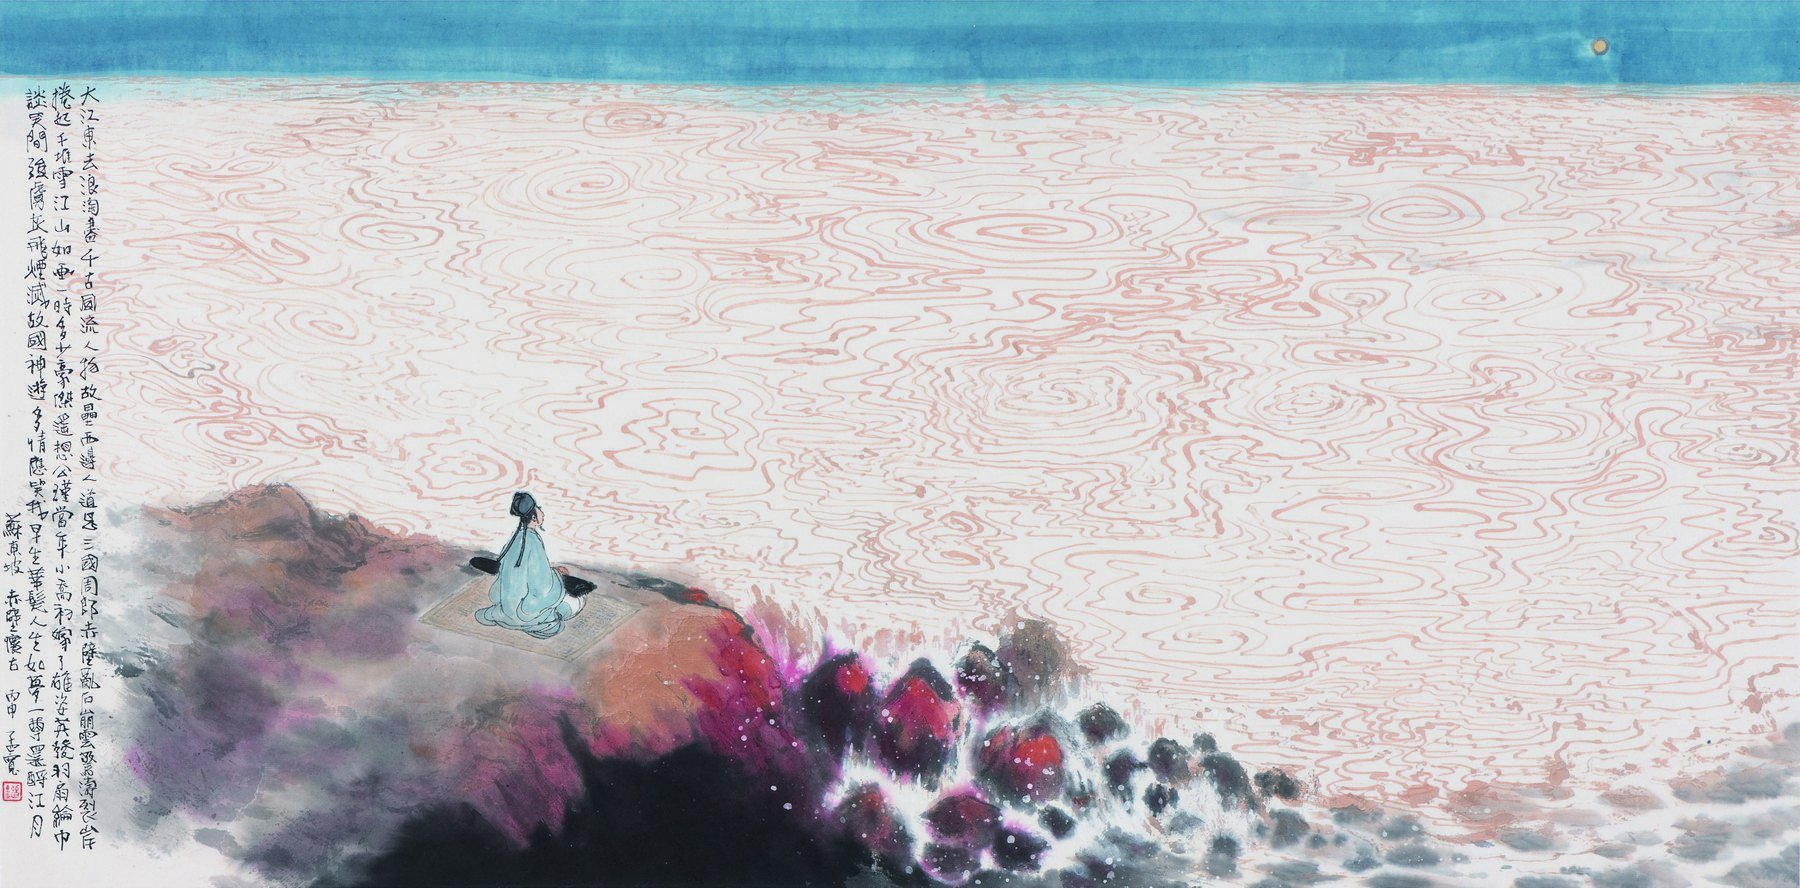 Pintura | Obras de Liu Mengkuan em exposição a partir de amanhã